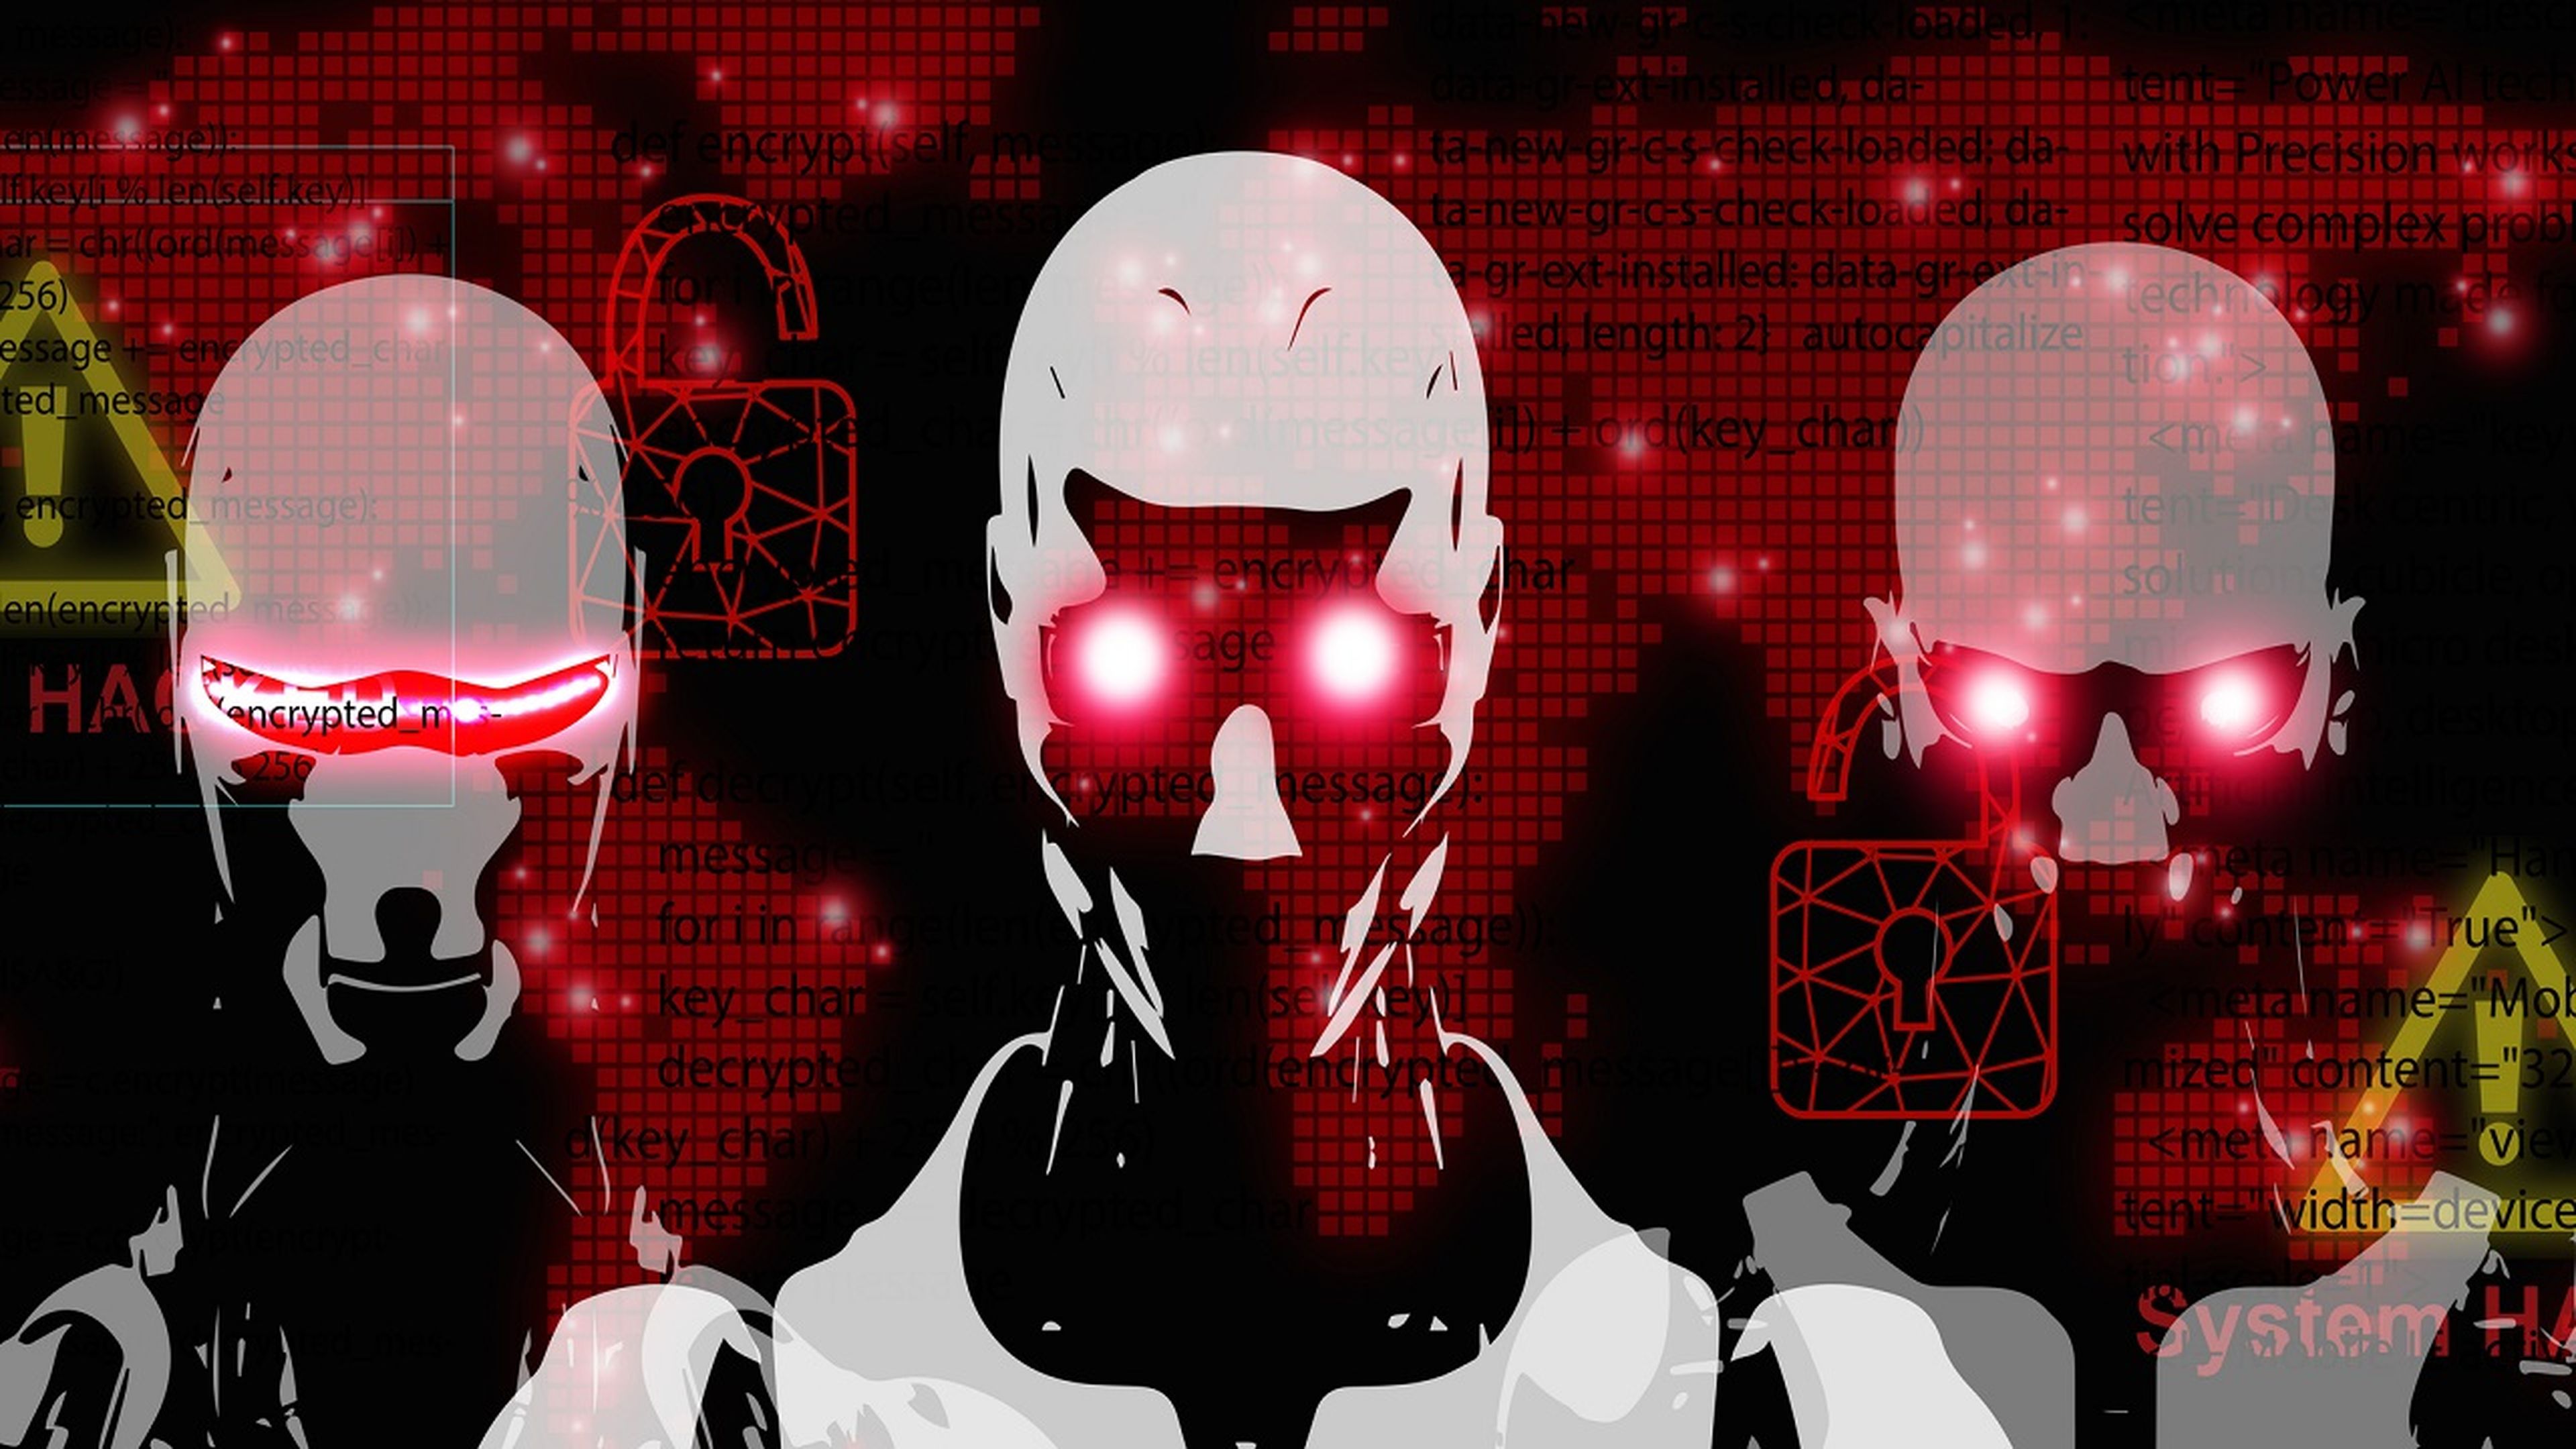 Científicos sin pelos en la lengua: “la inteligencia artificial podría suponer el fin para la humanidad”